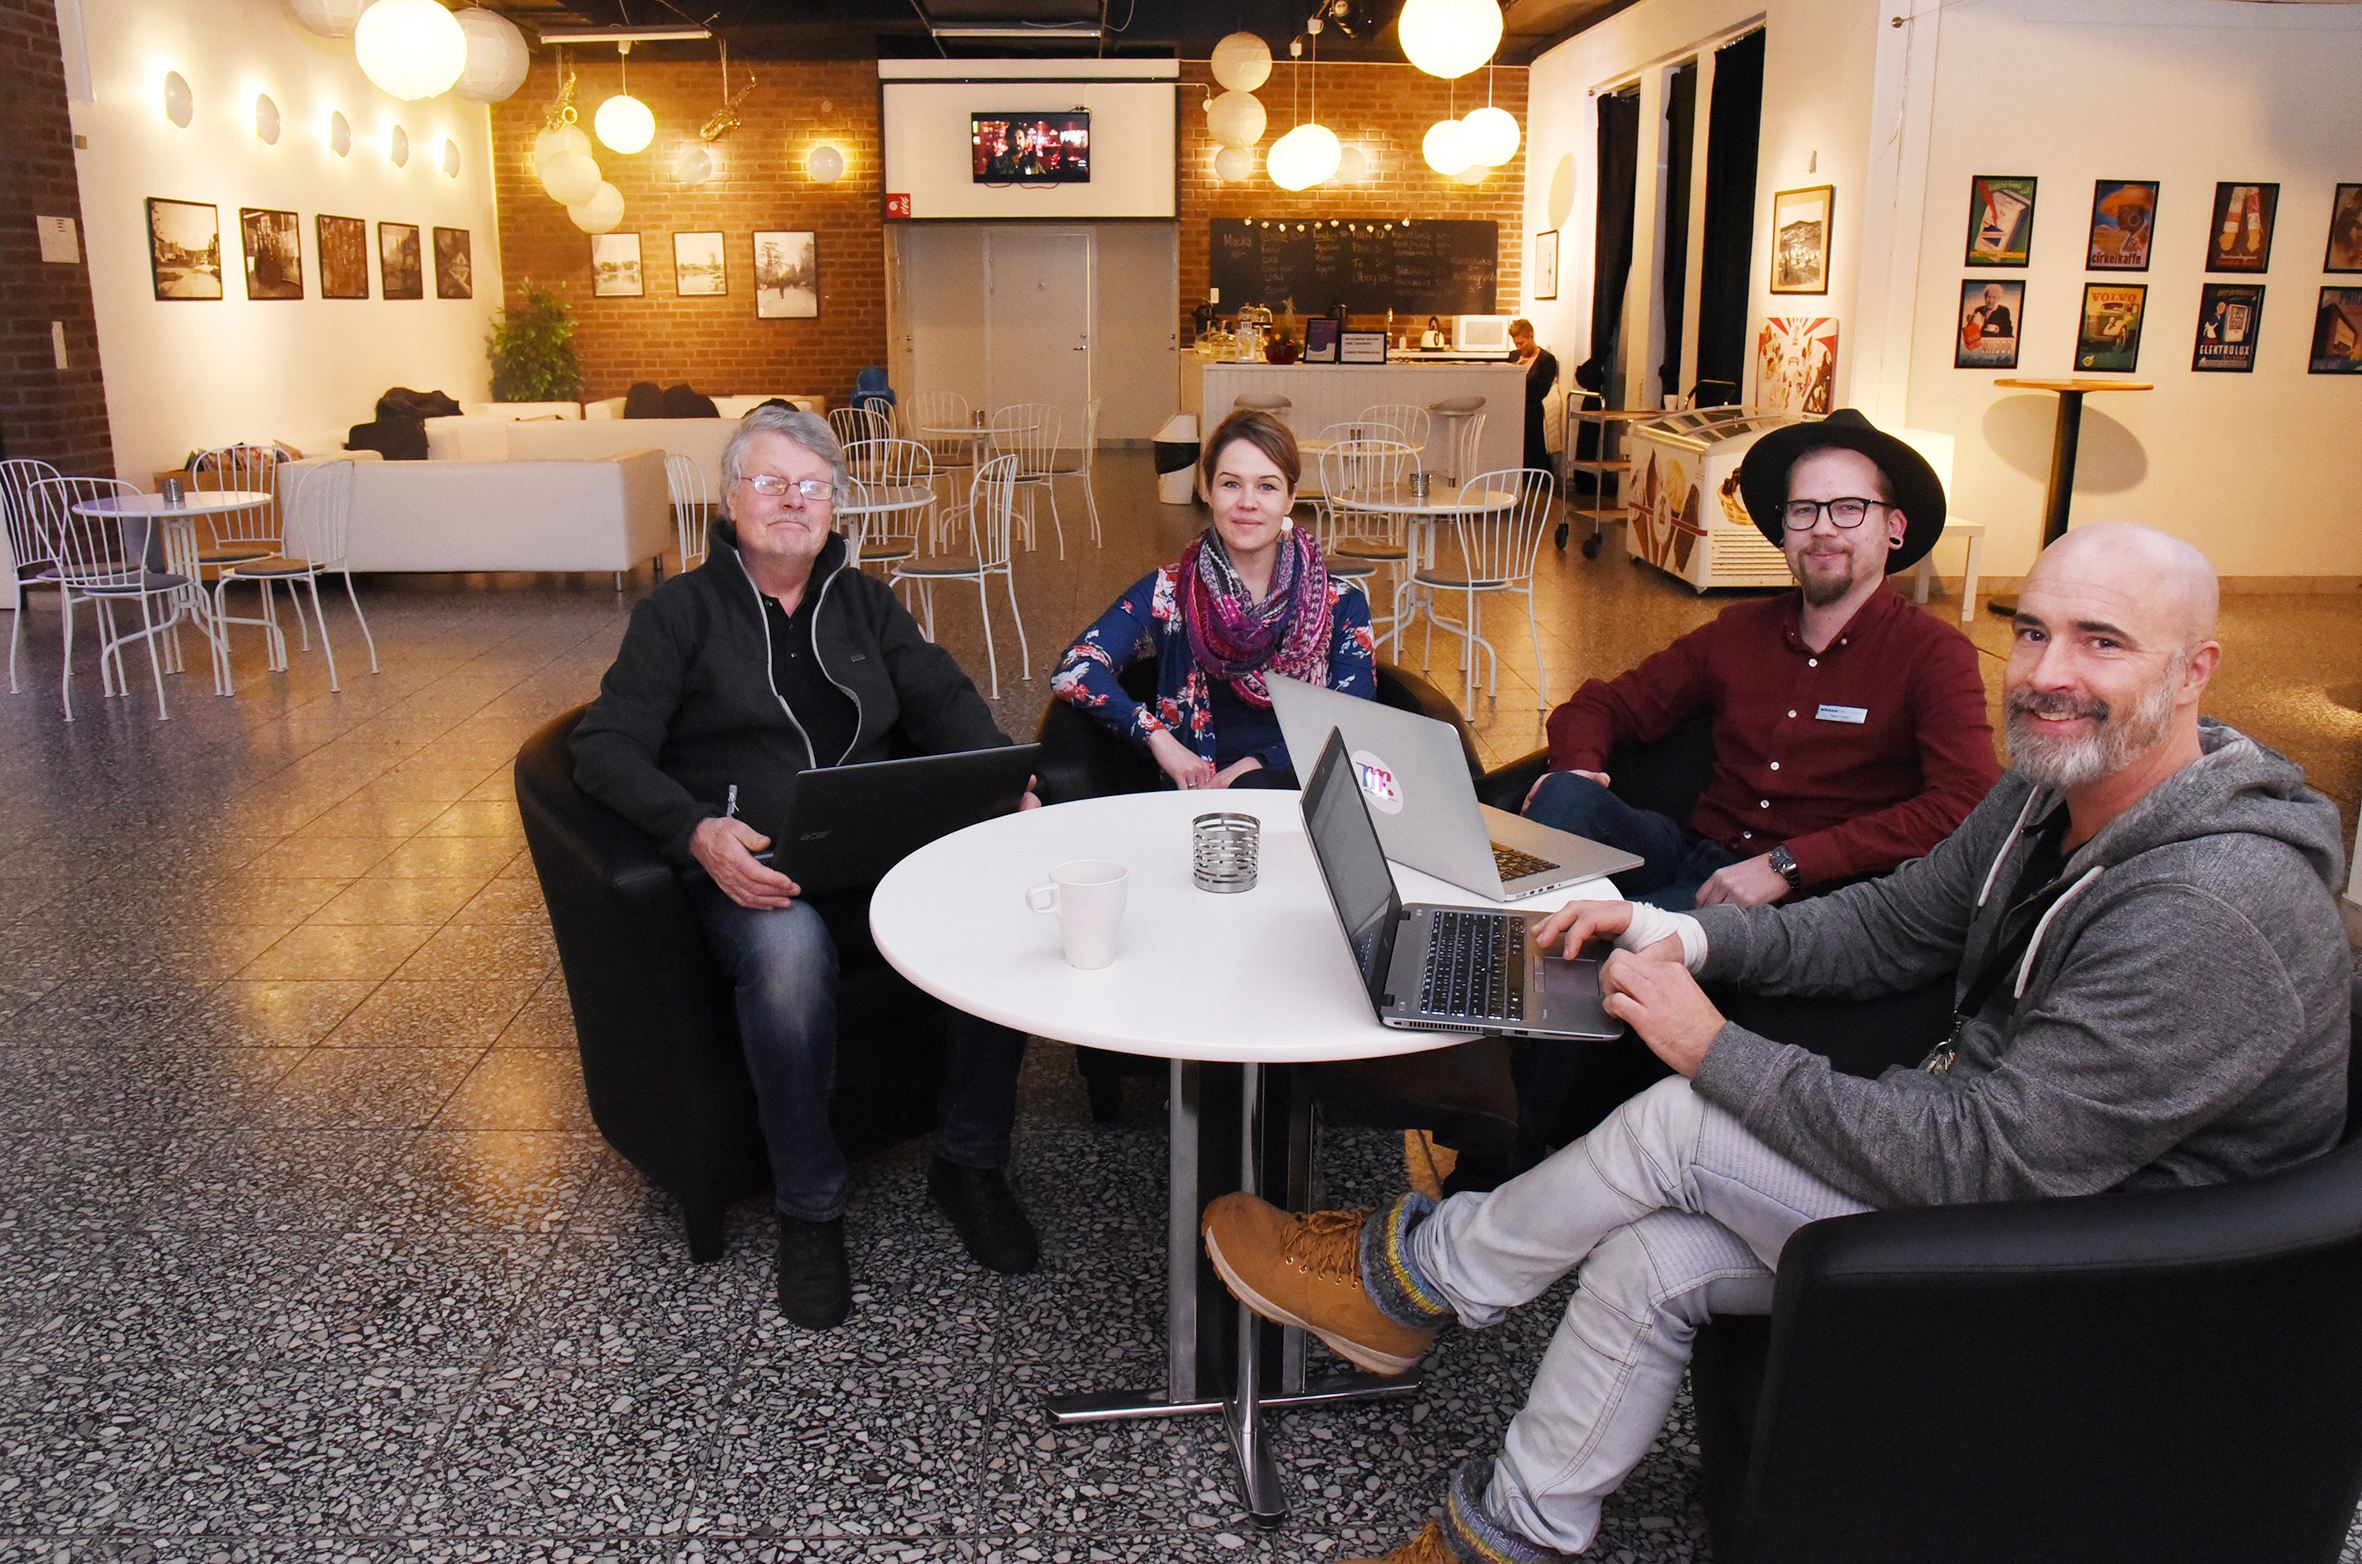 Några av entuasiasterna bakom satsningen; Lennart Johansson, Kristin Nellebo, Daniel Sanell och Olle Rodéhn.